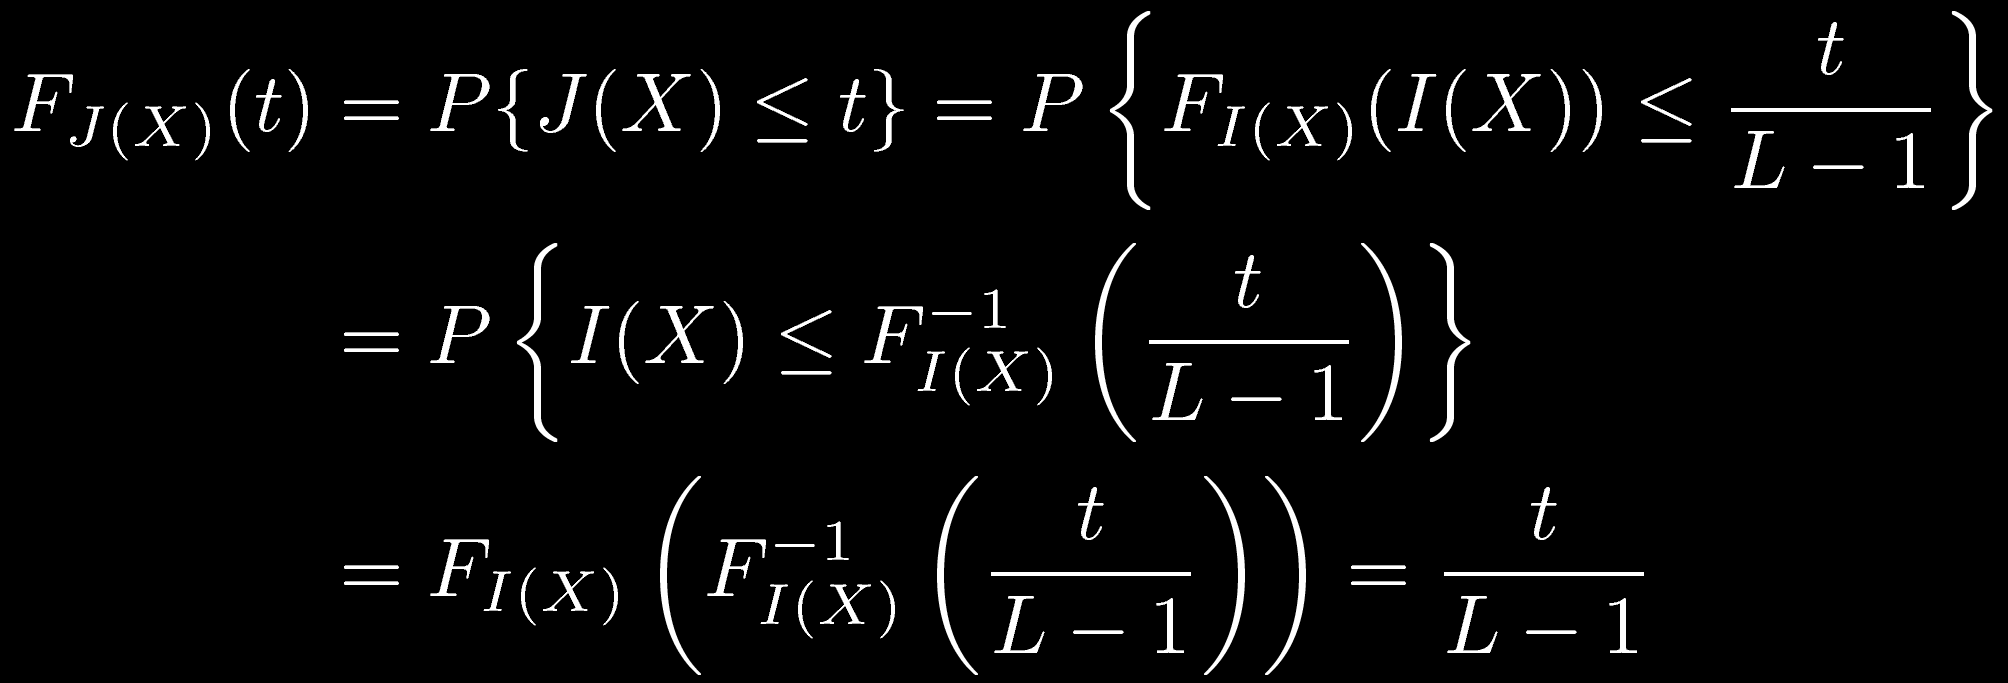 Equalizzazione La nuova immagine J che risulta dall'equalizzazione, assumendo FI(X) invertibile, ha una distribuzione di intensità uniforme.